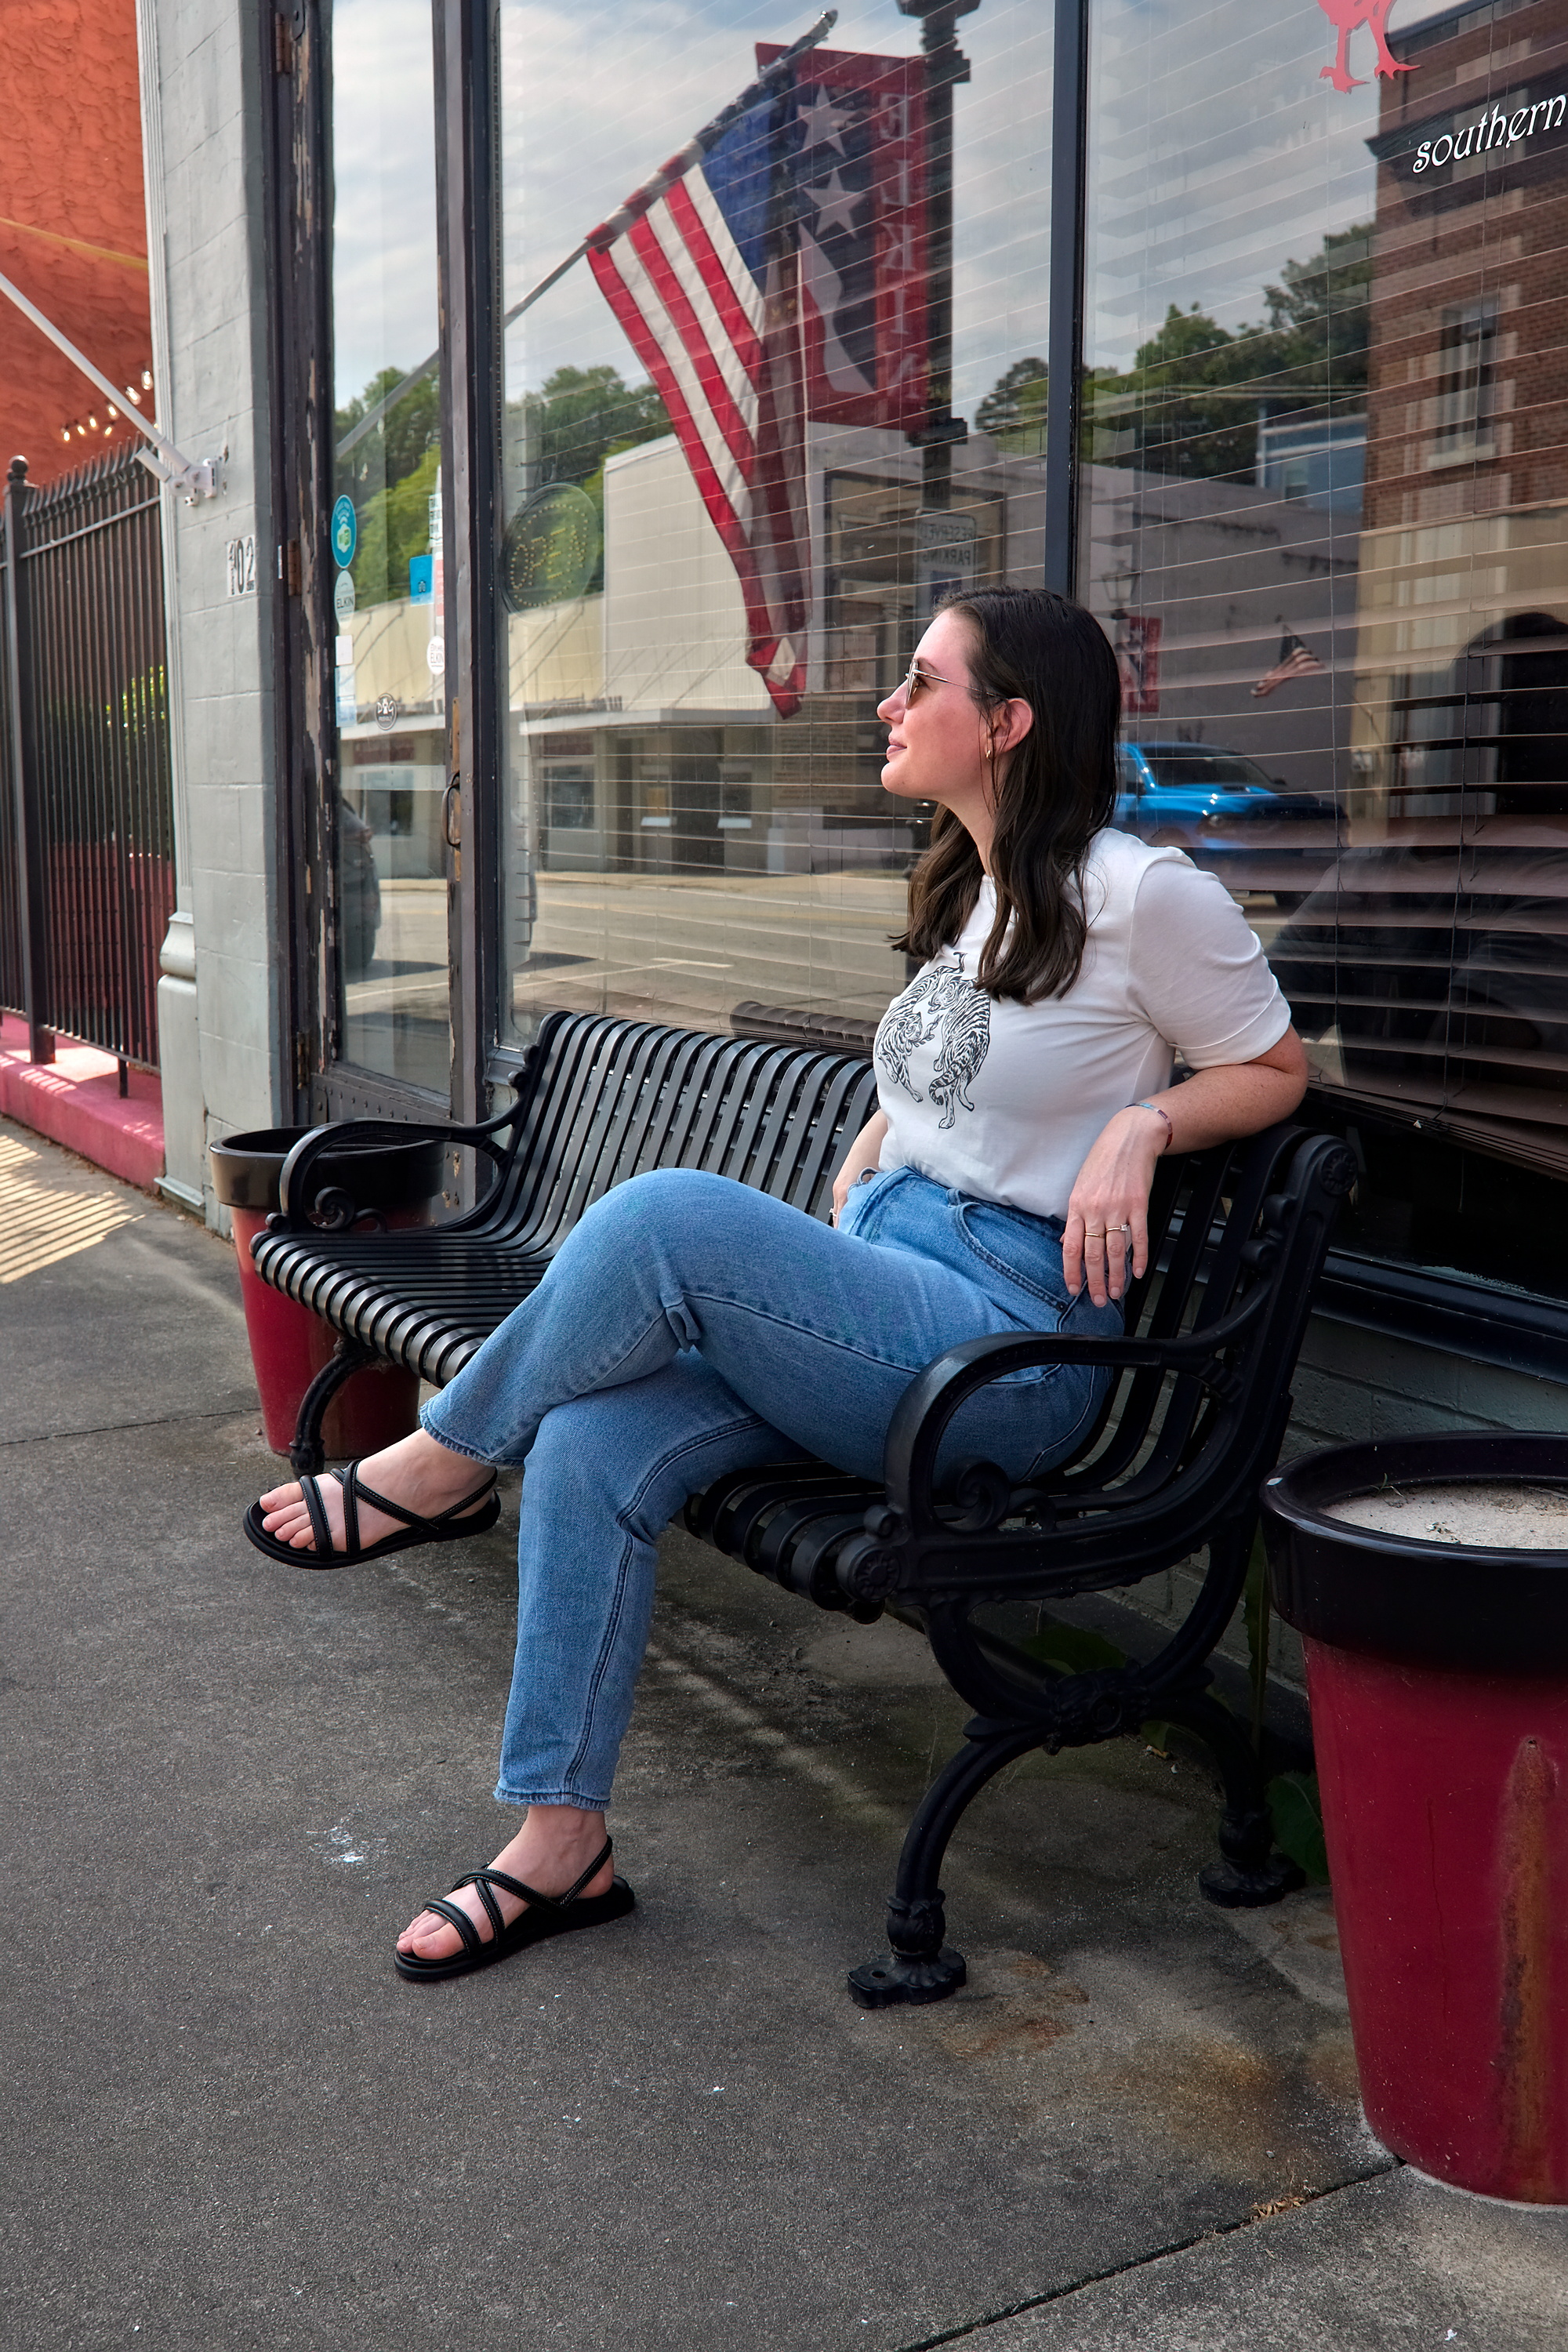 Alyssa sits on a bench in Elkin